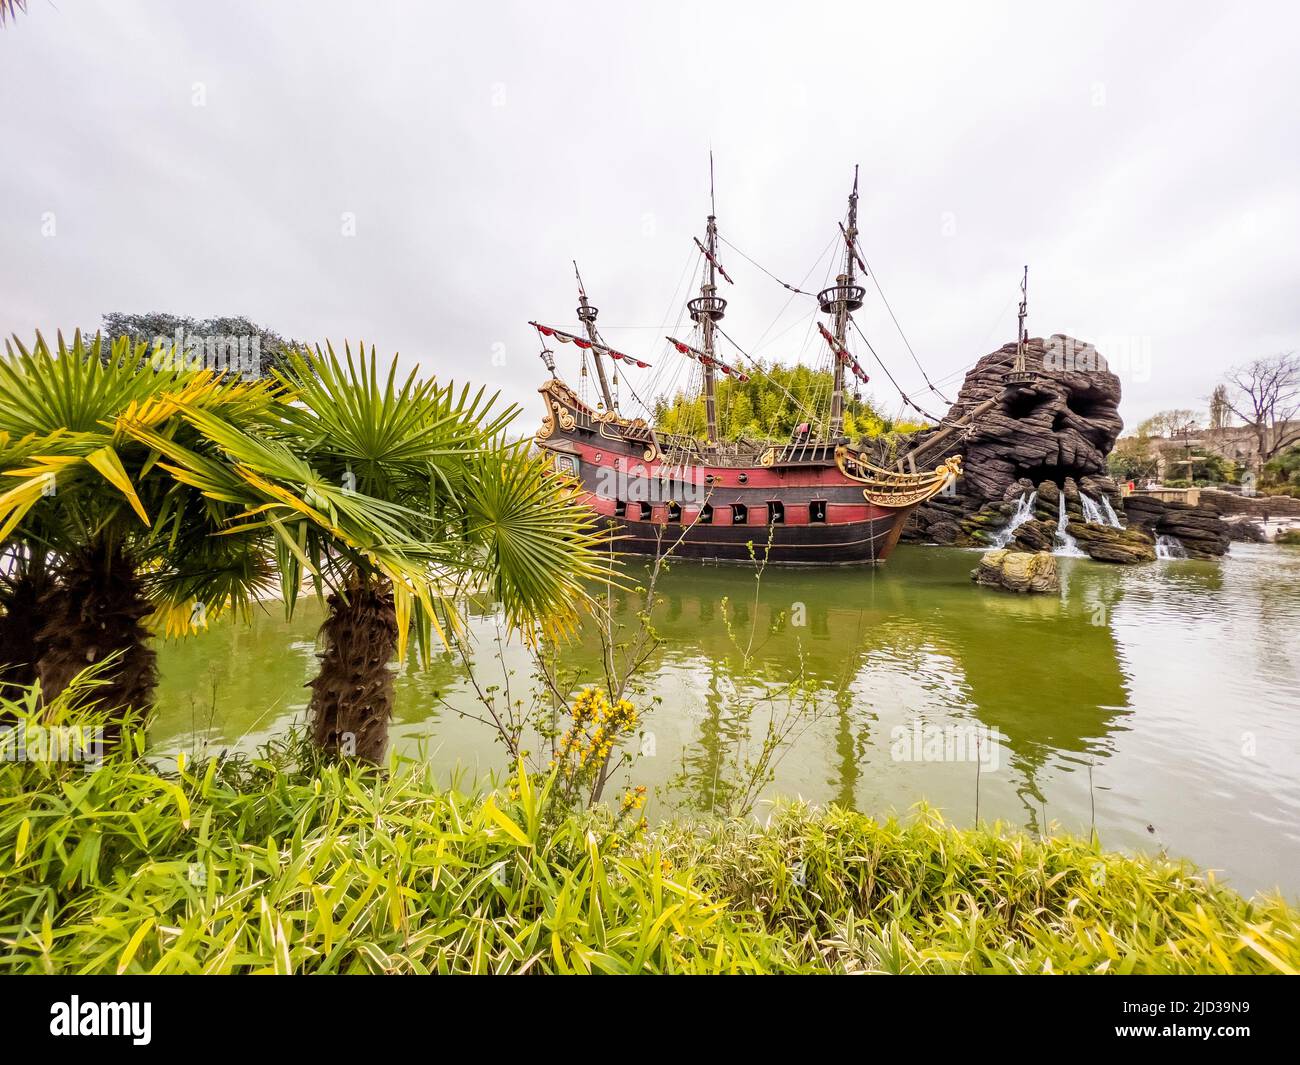 Parigi, Francia - 04/05/2022: Pirati dei Caraibi scena di giostre e luoghi di Disneyland Parigi. Modello di nave del capitano Jack Sparrow. Design di successo Foto Stock